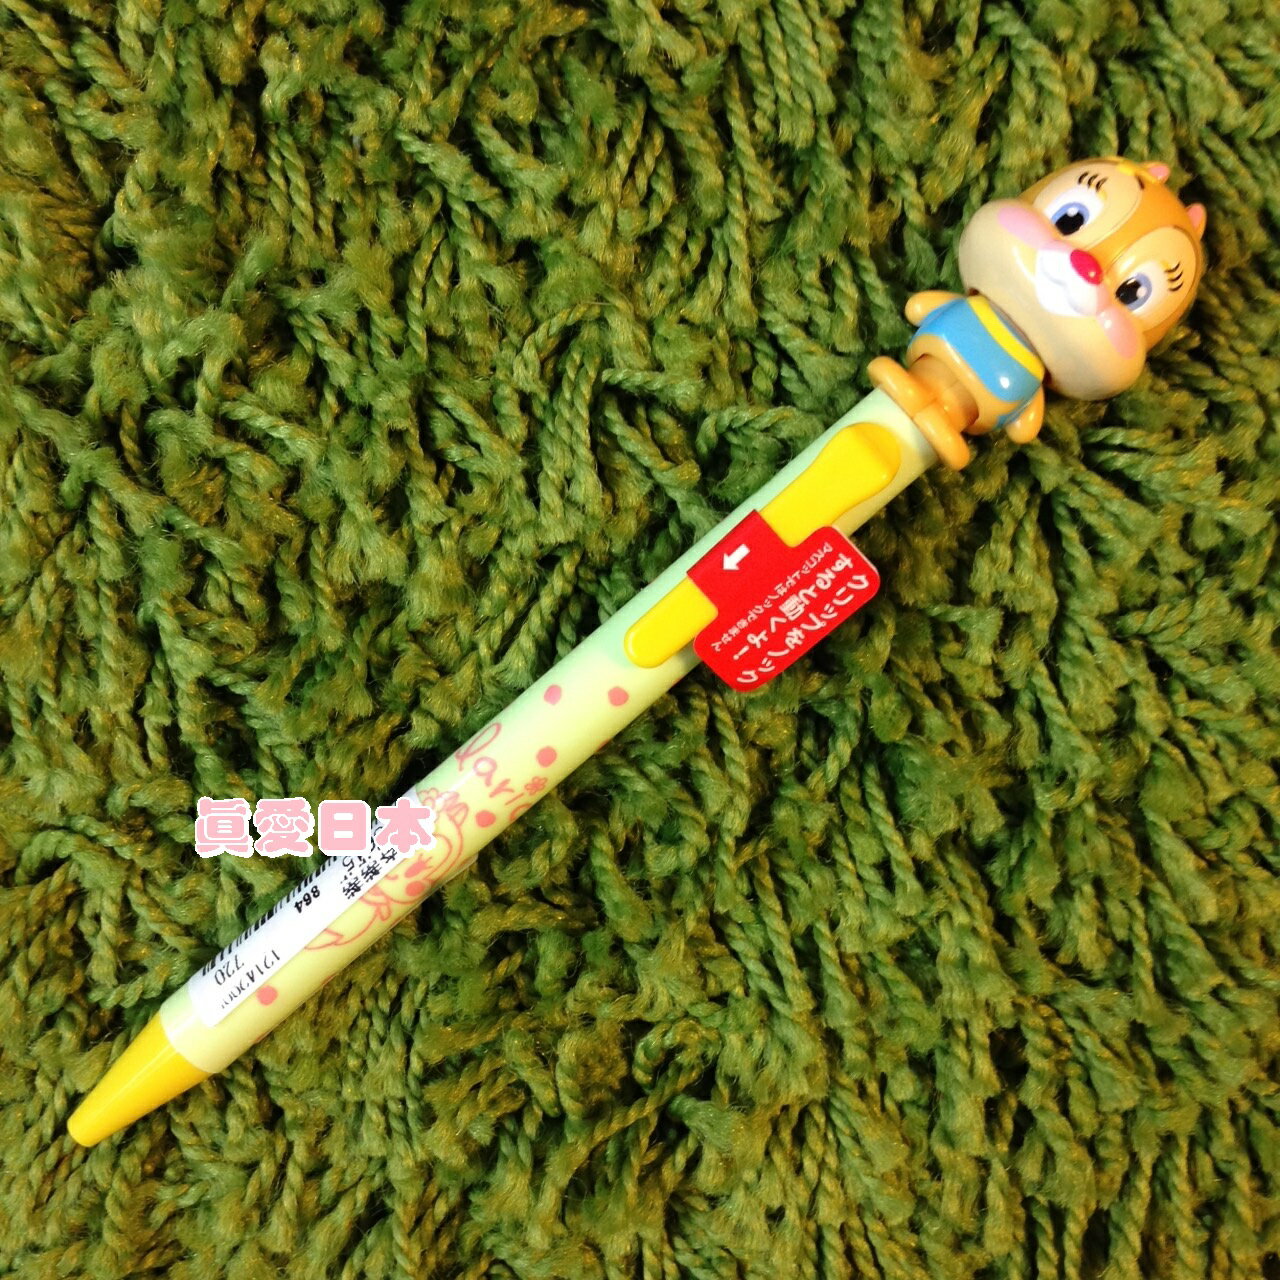 【真愛日本】16051300079	專賣限定點頭原子筆-克萊兒迪士尼 花栗鼠 奇奇蒂蒂 松鼠原子筆 正品 限量 預購